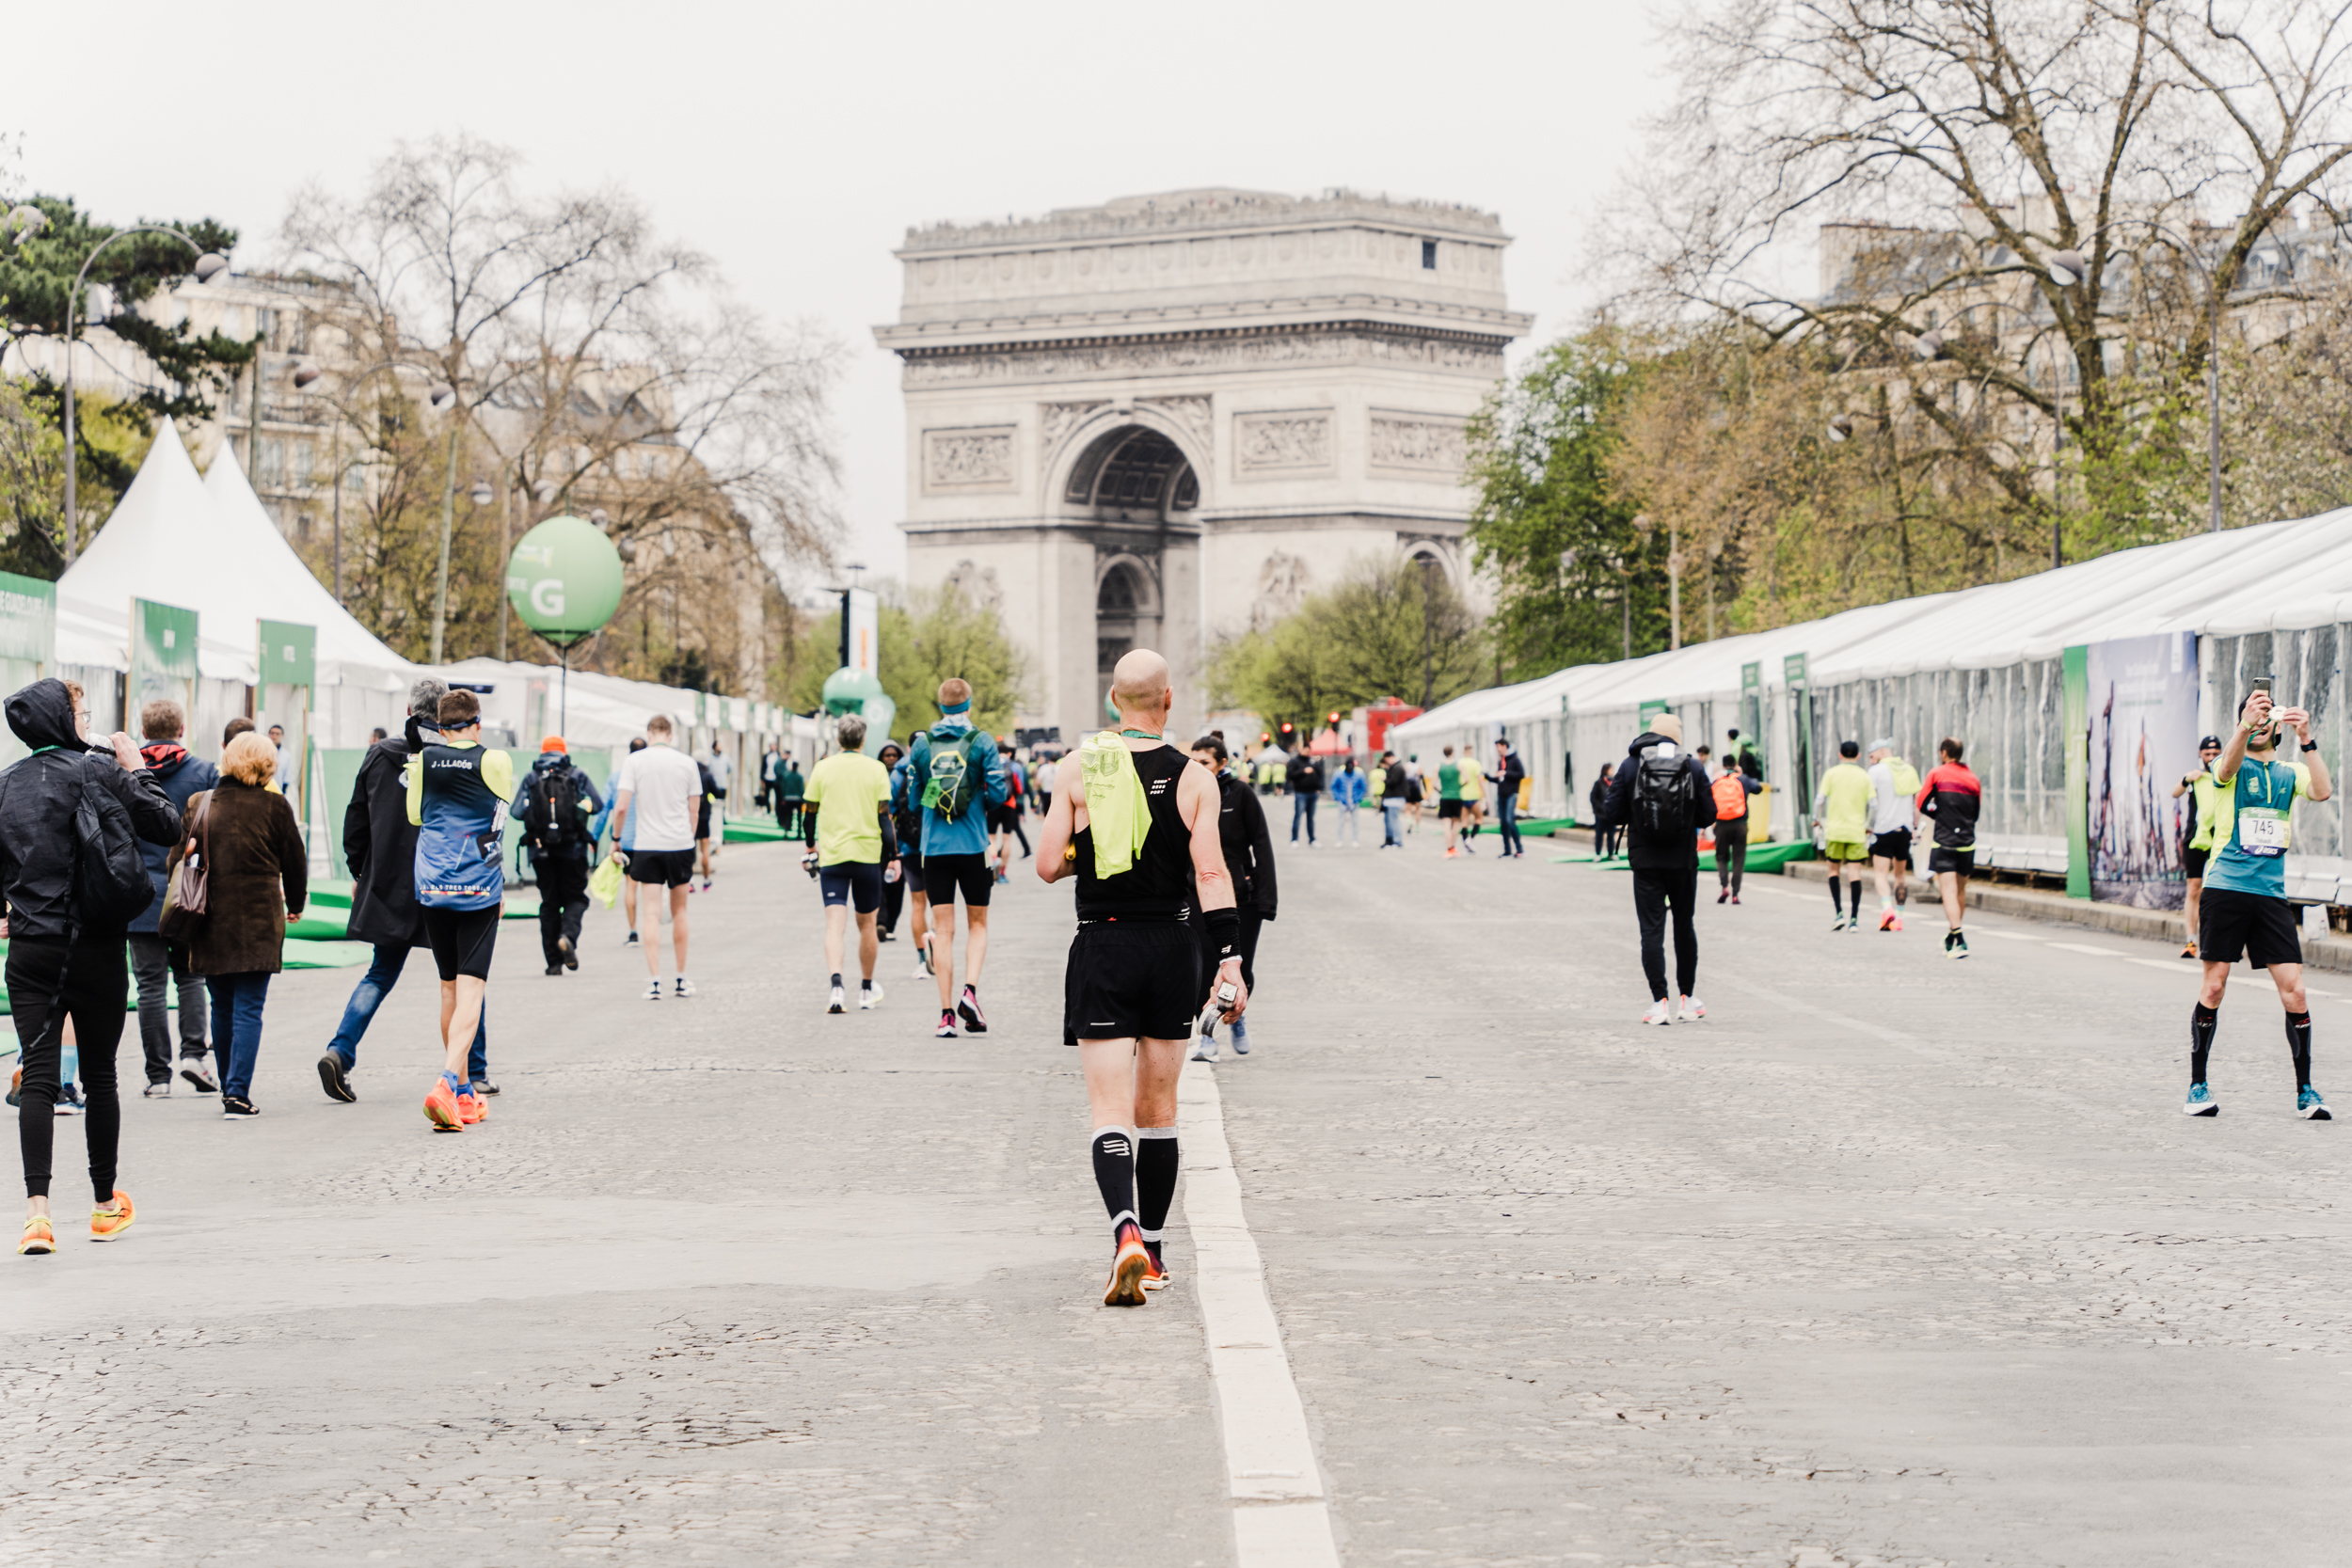 Qu'est-ce que le Marathon pour Tous des Jeux Olympiques de Paris